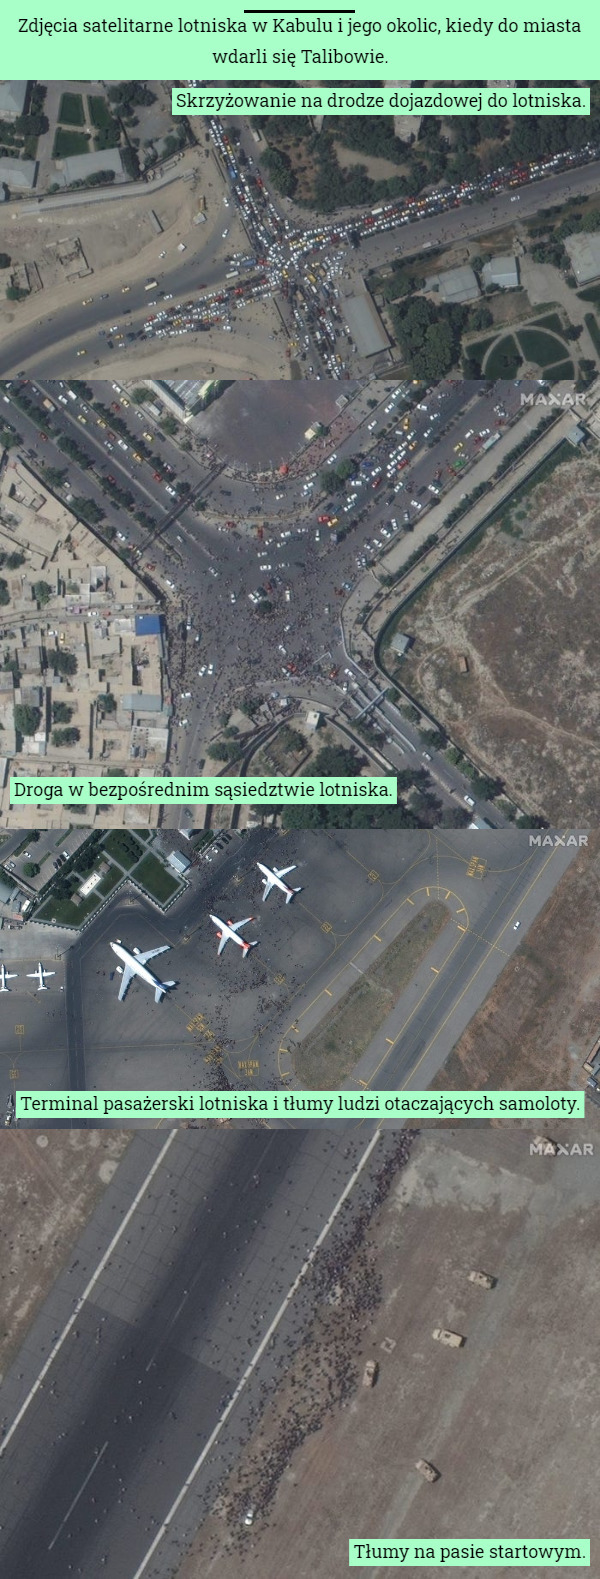 Zdjęcia satelitarne lotniska w Kabulu i jego okolic, kiedy do miasta wdarli się Talibowie. Skrzyżowanie na drodze dojazdowej do lotniska. Droga w bezpośrednim sąsiedztwie lotniska. Terminal pasażerski lotniska i tłumy ludzi otaczających samoloty. Tłumy na pasie startowym. 